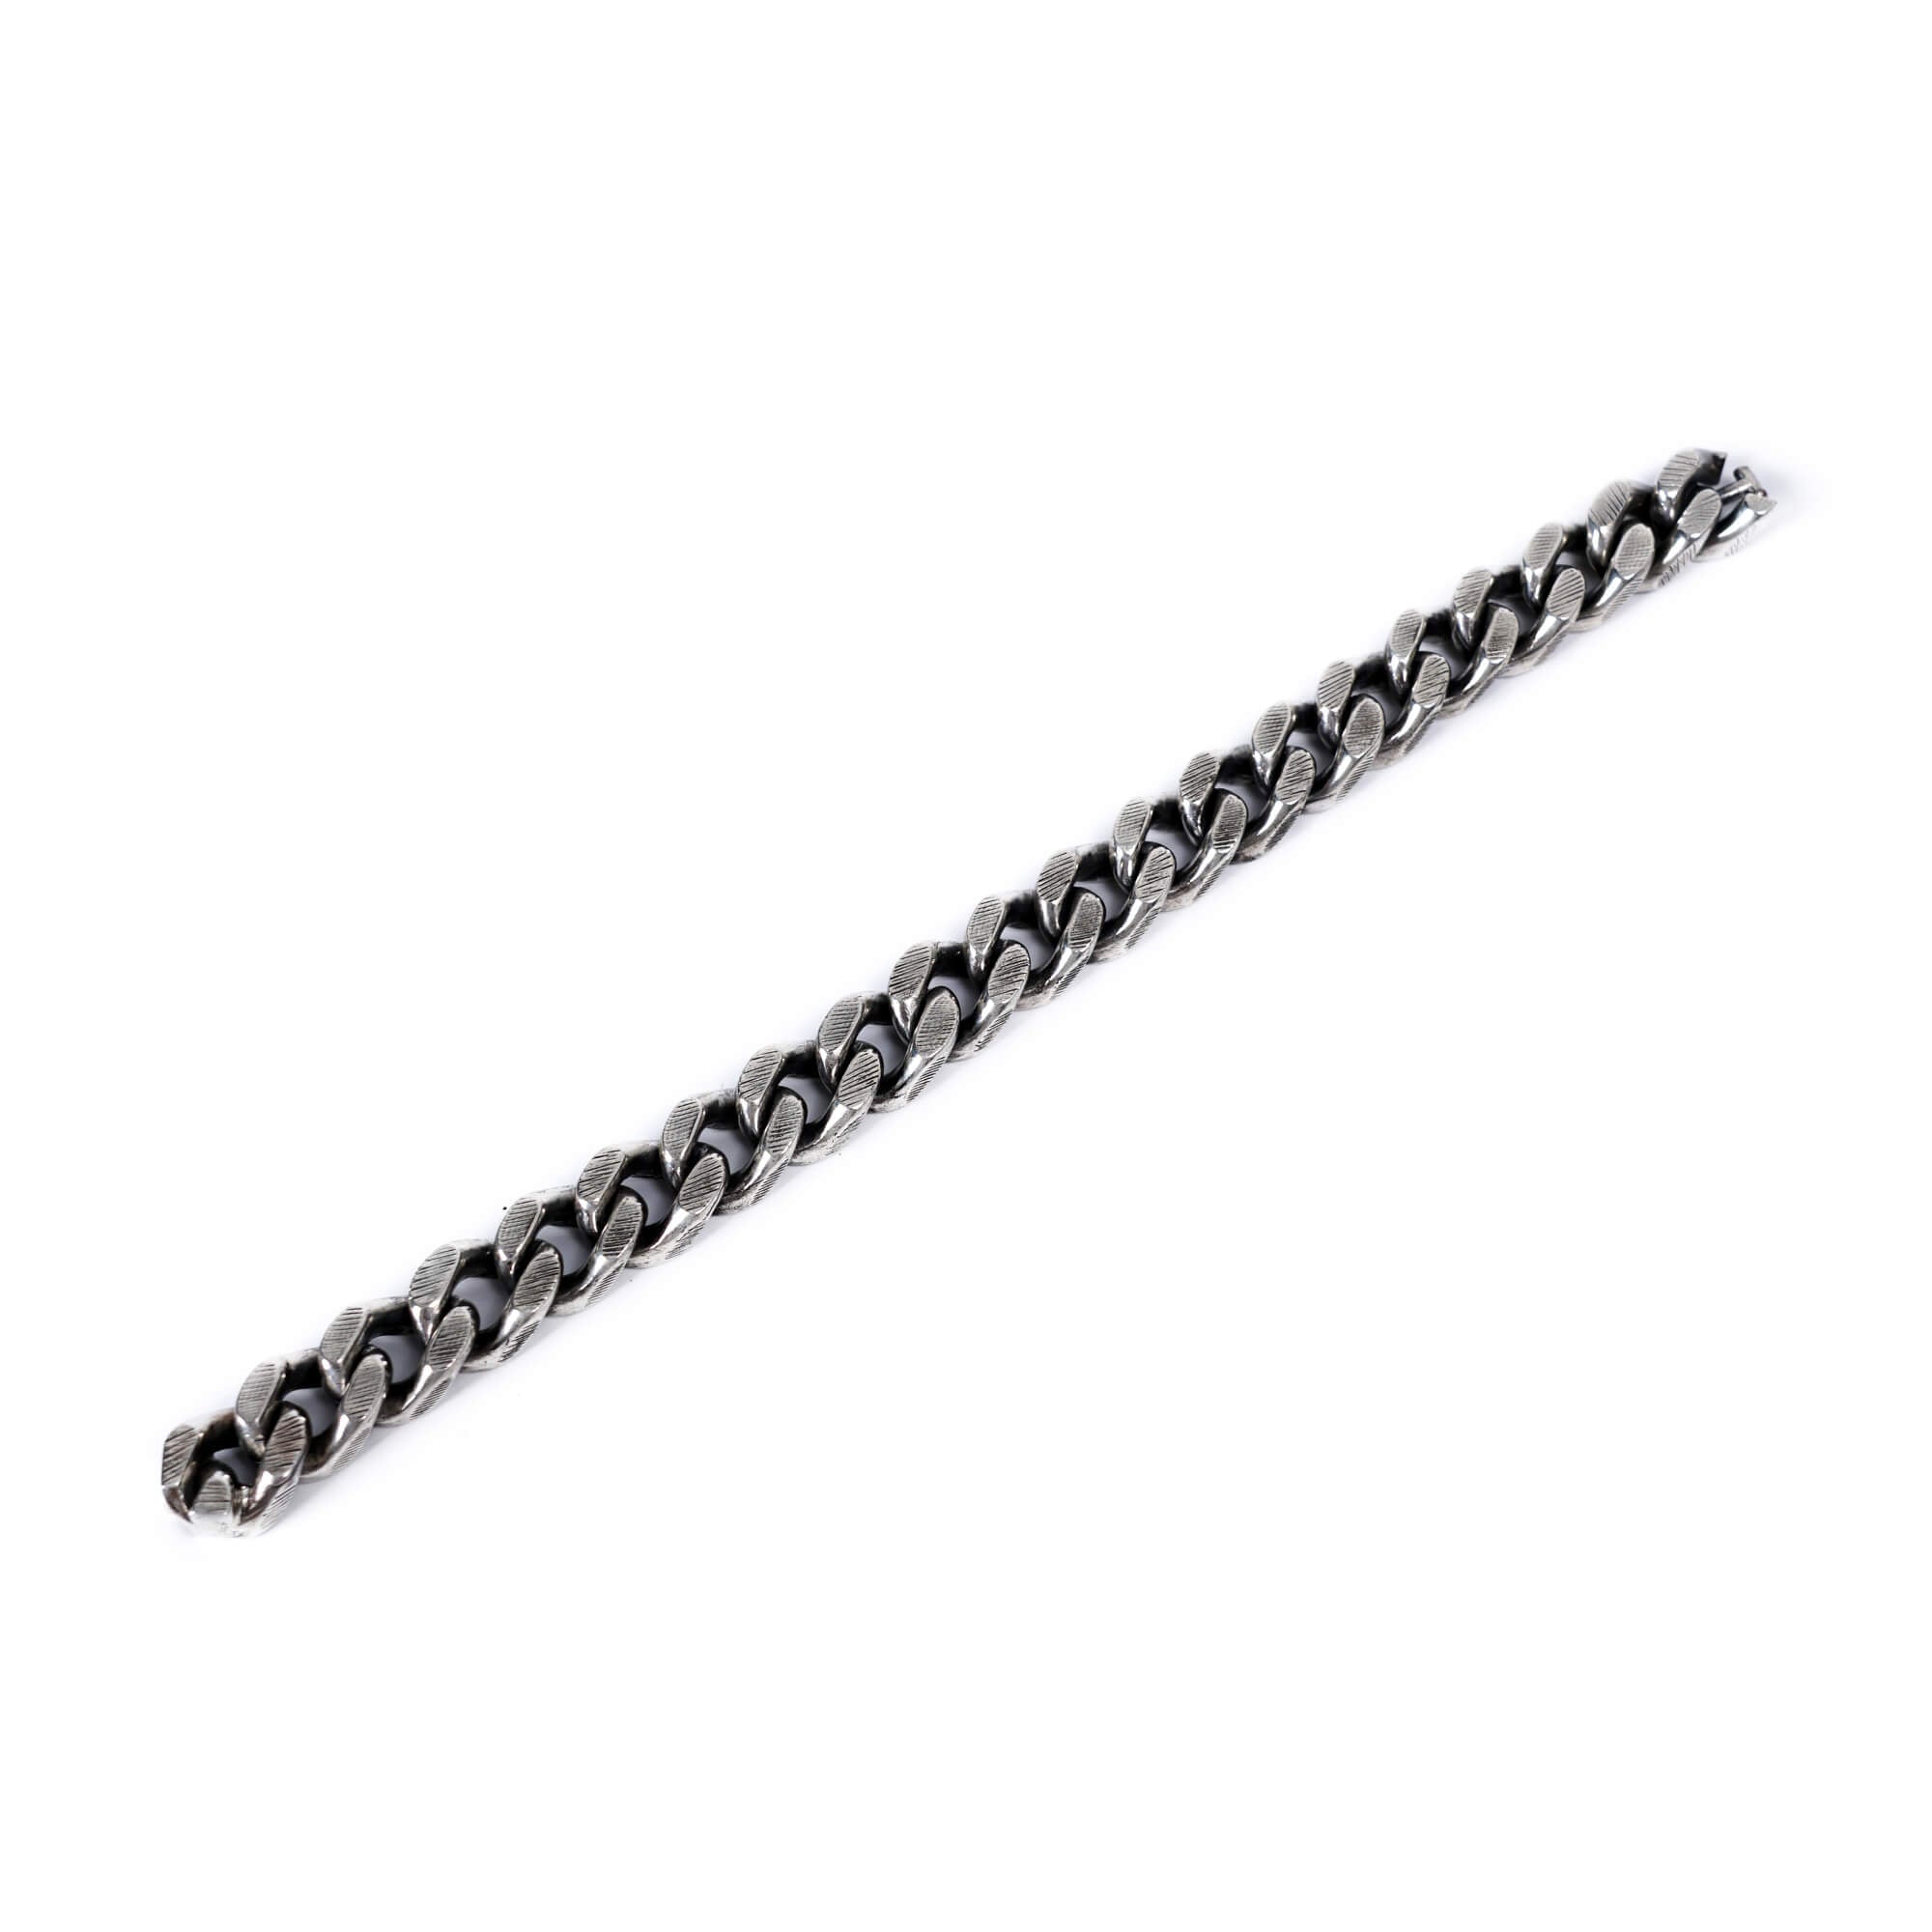 Werkstatt München Chain Bracelet